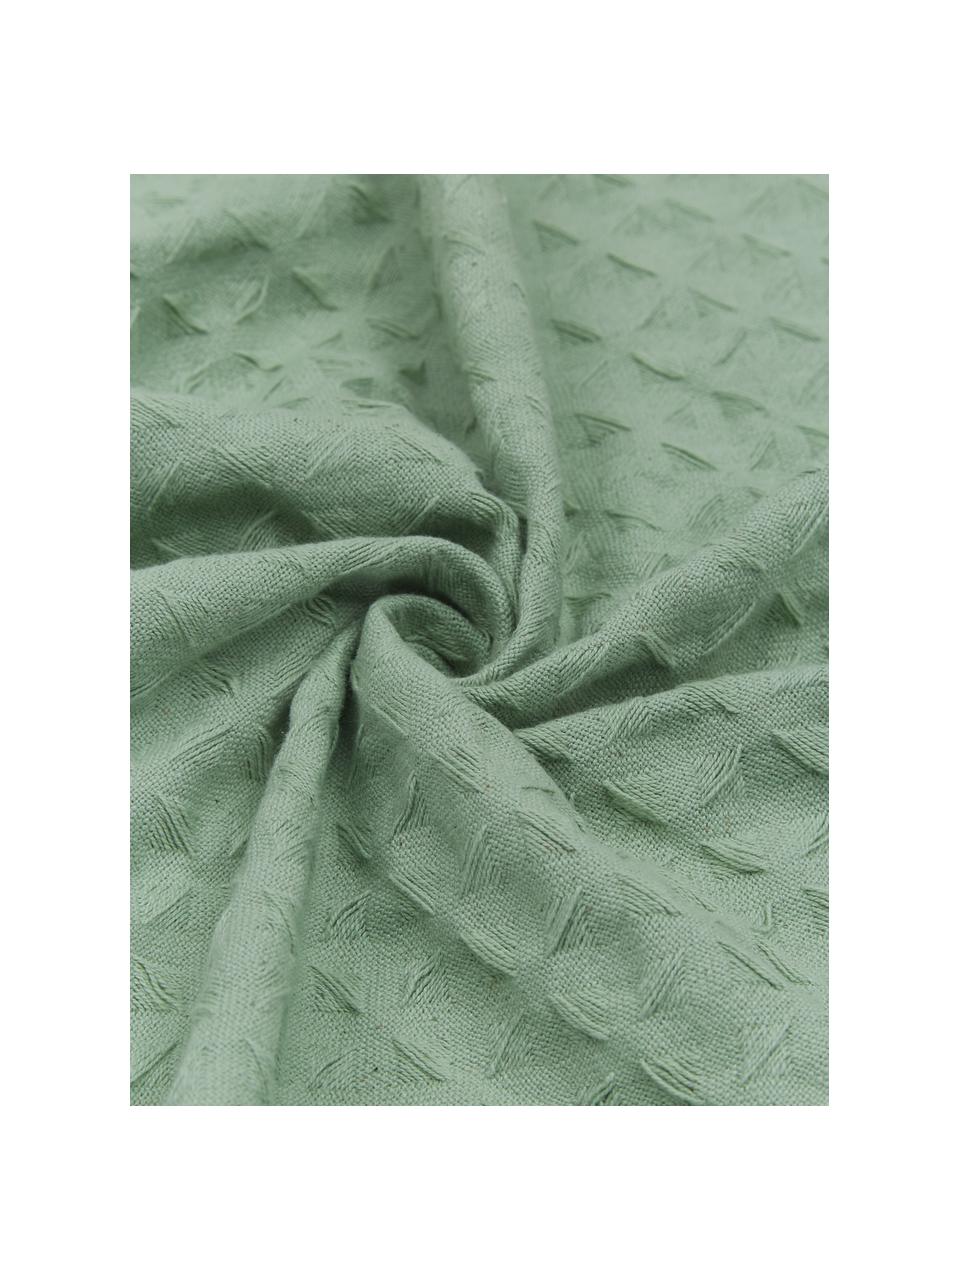 Waffelpiqué-Tagesdecke Panal in Grün, 100% Baumwolle, Grün, B 180 x L 260 cm (für Betten bis 140 x 200 cm)